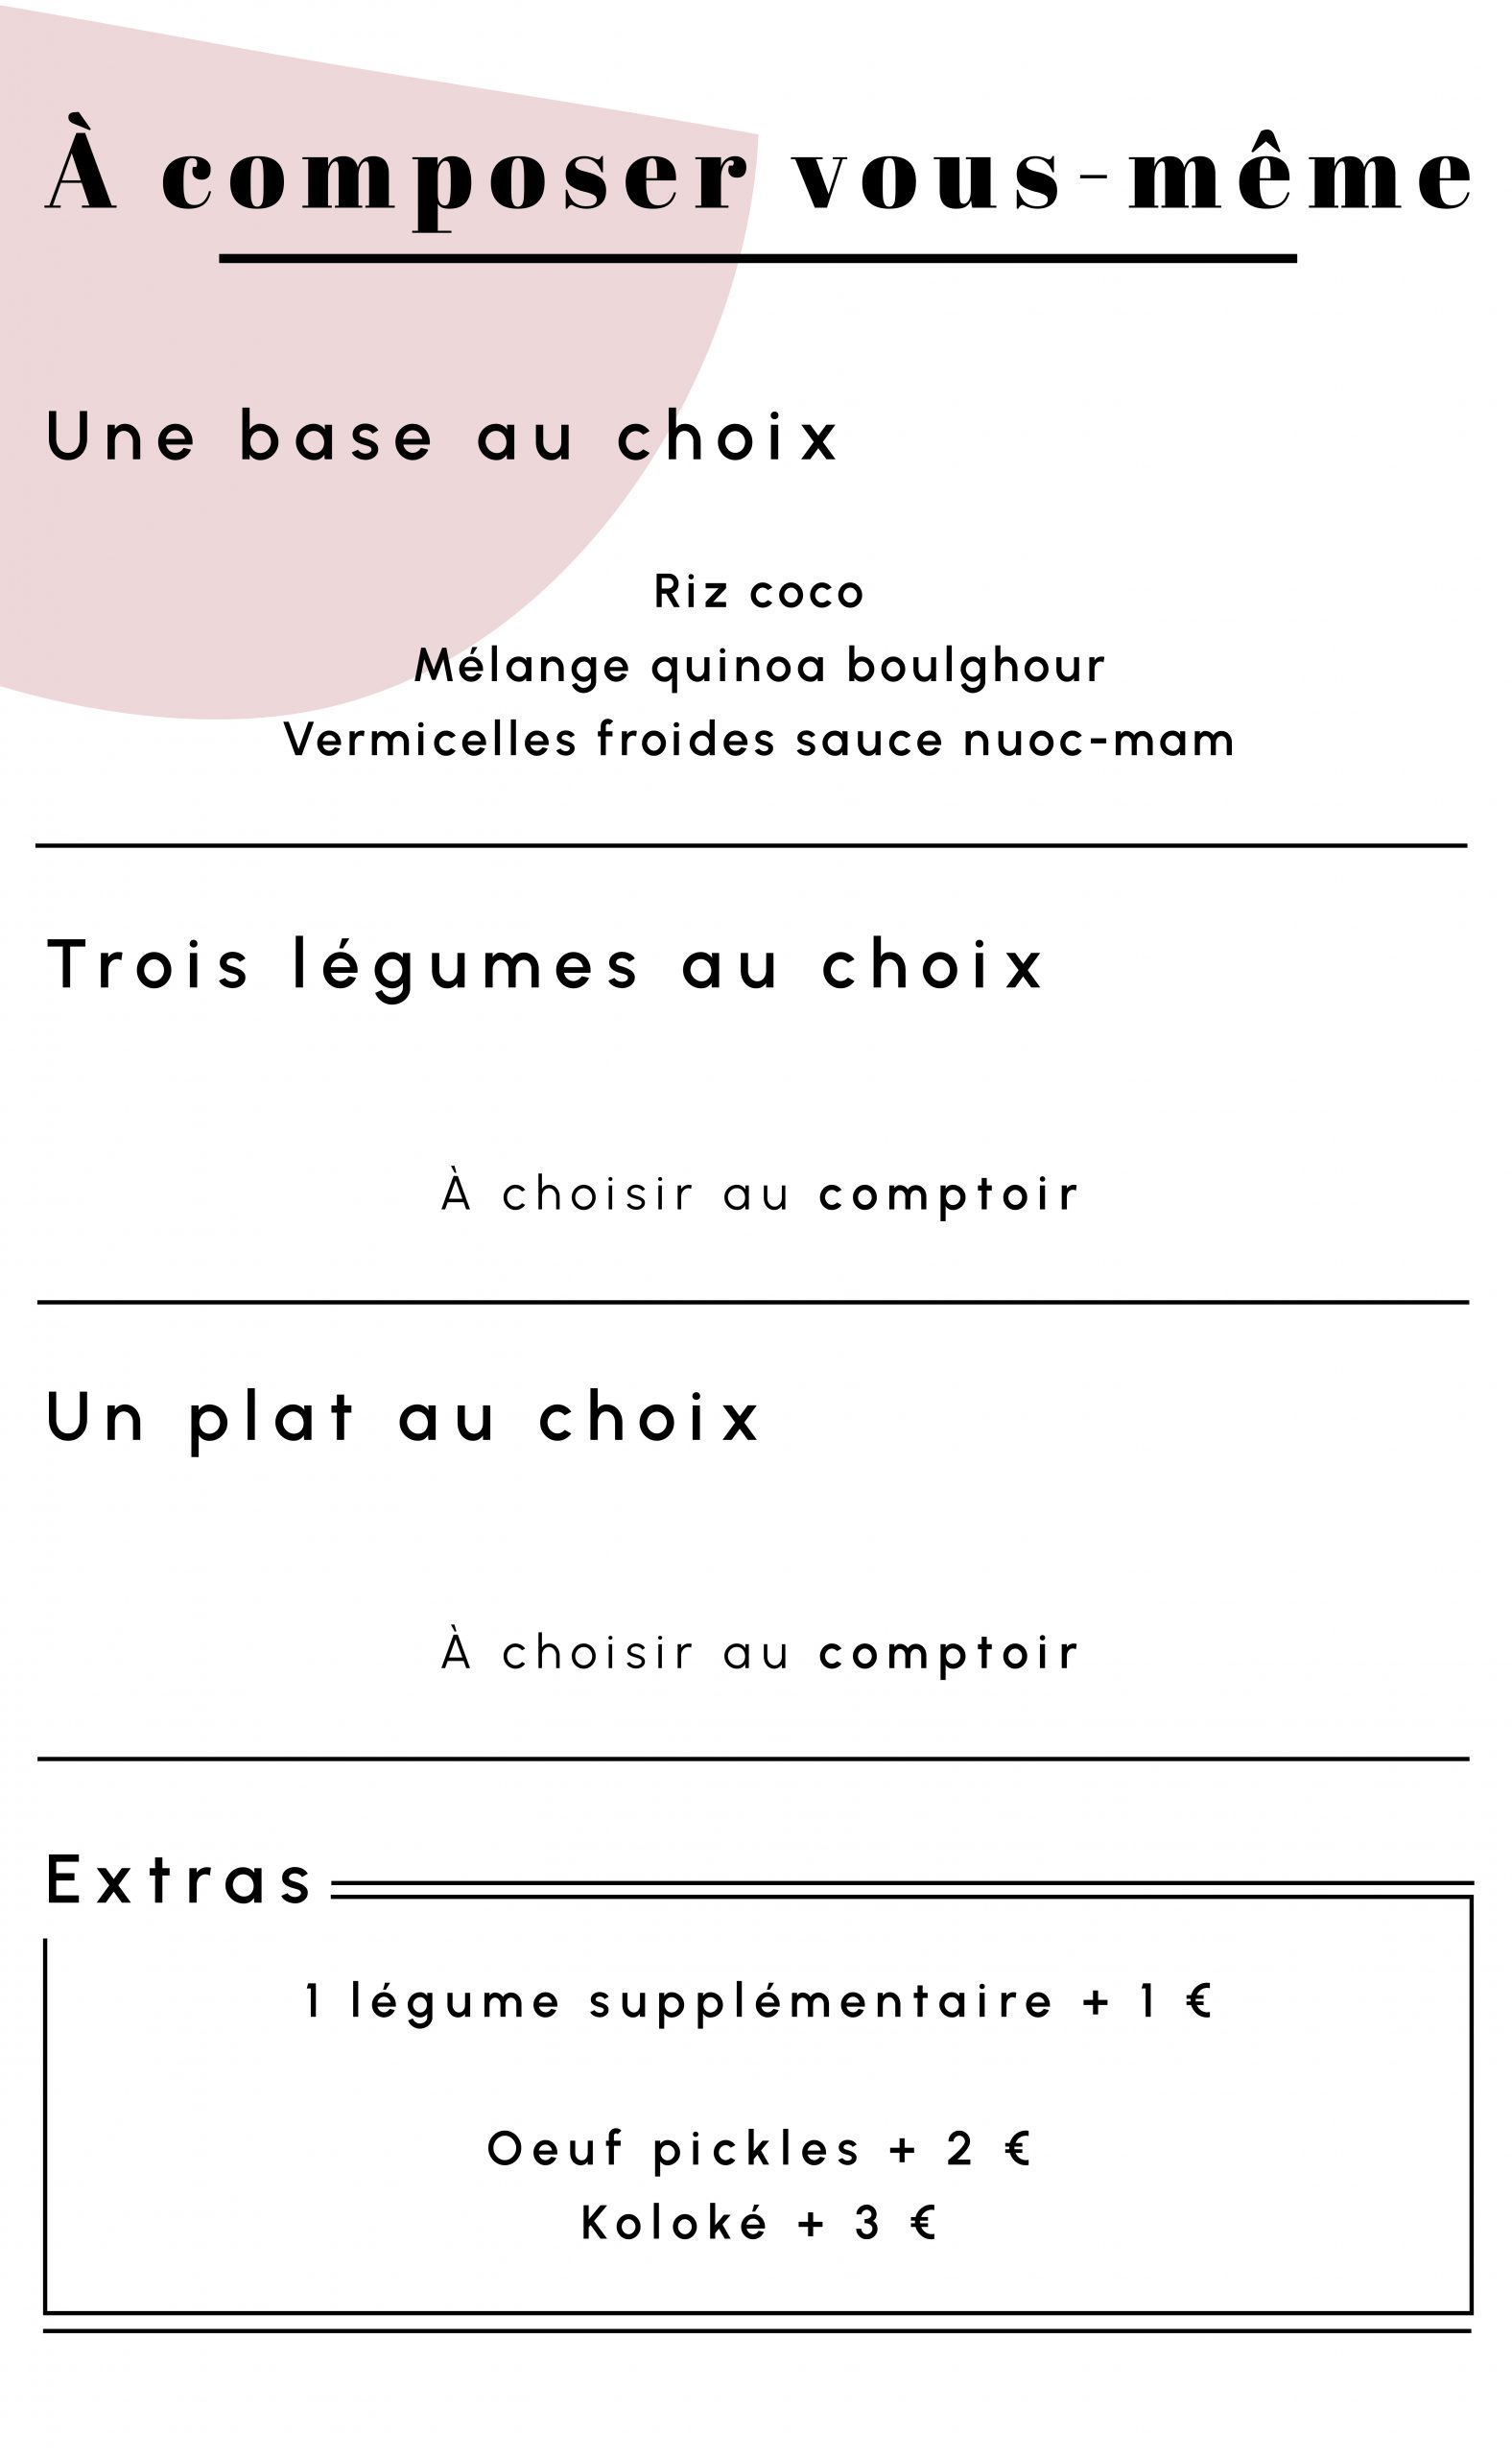 menu à composer